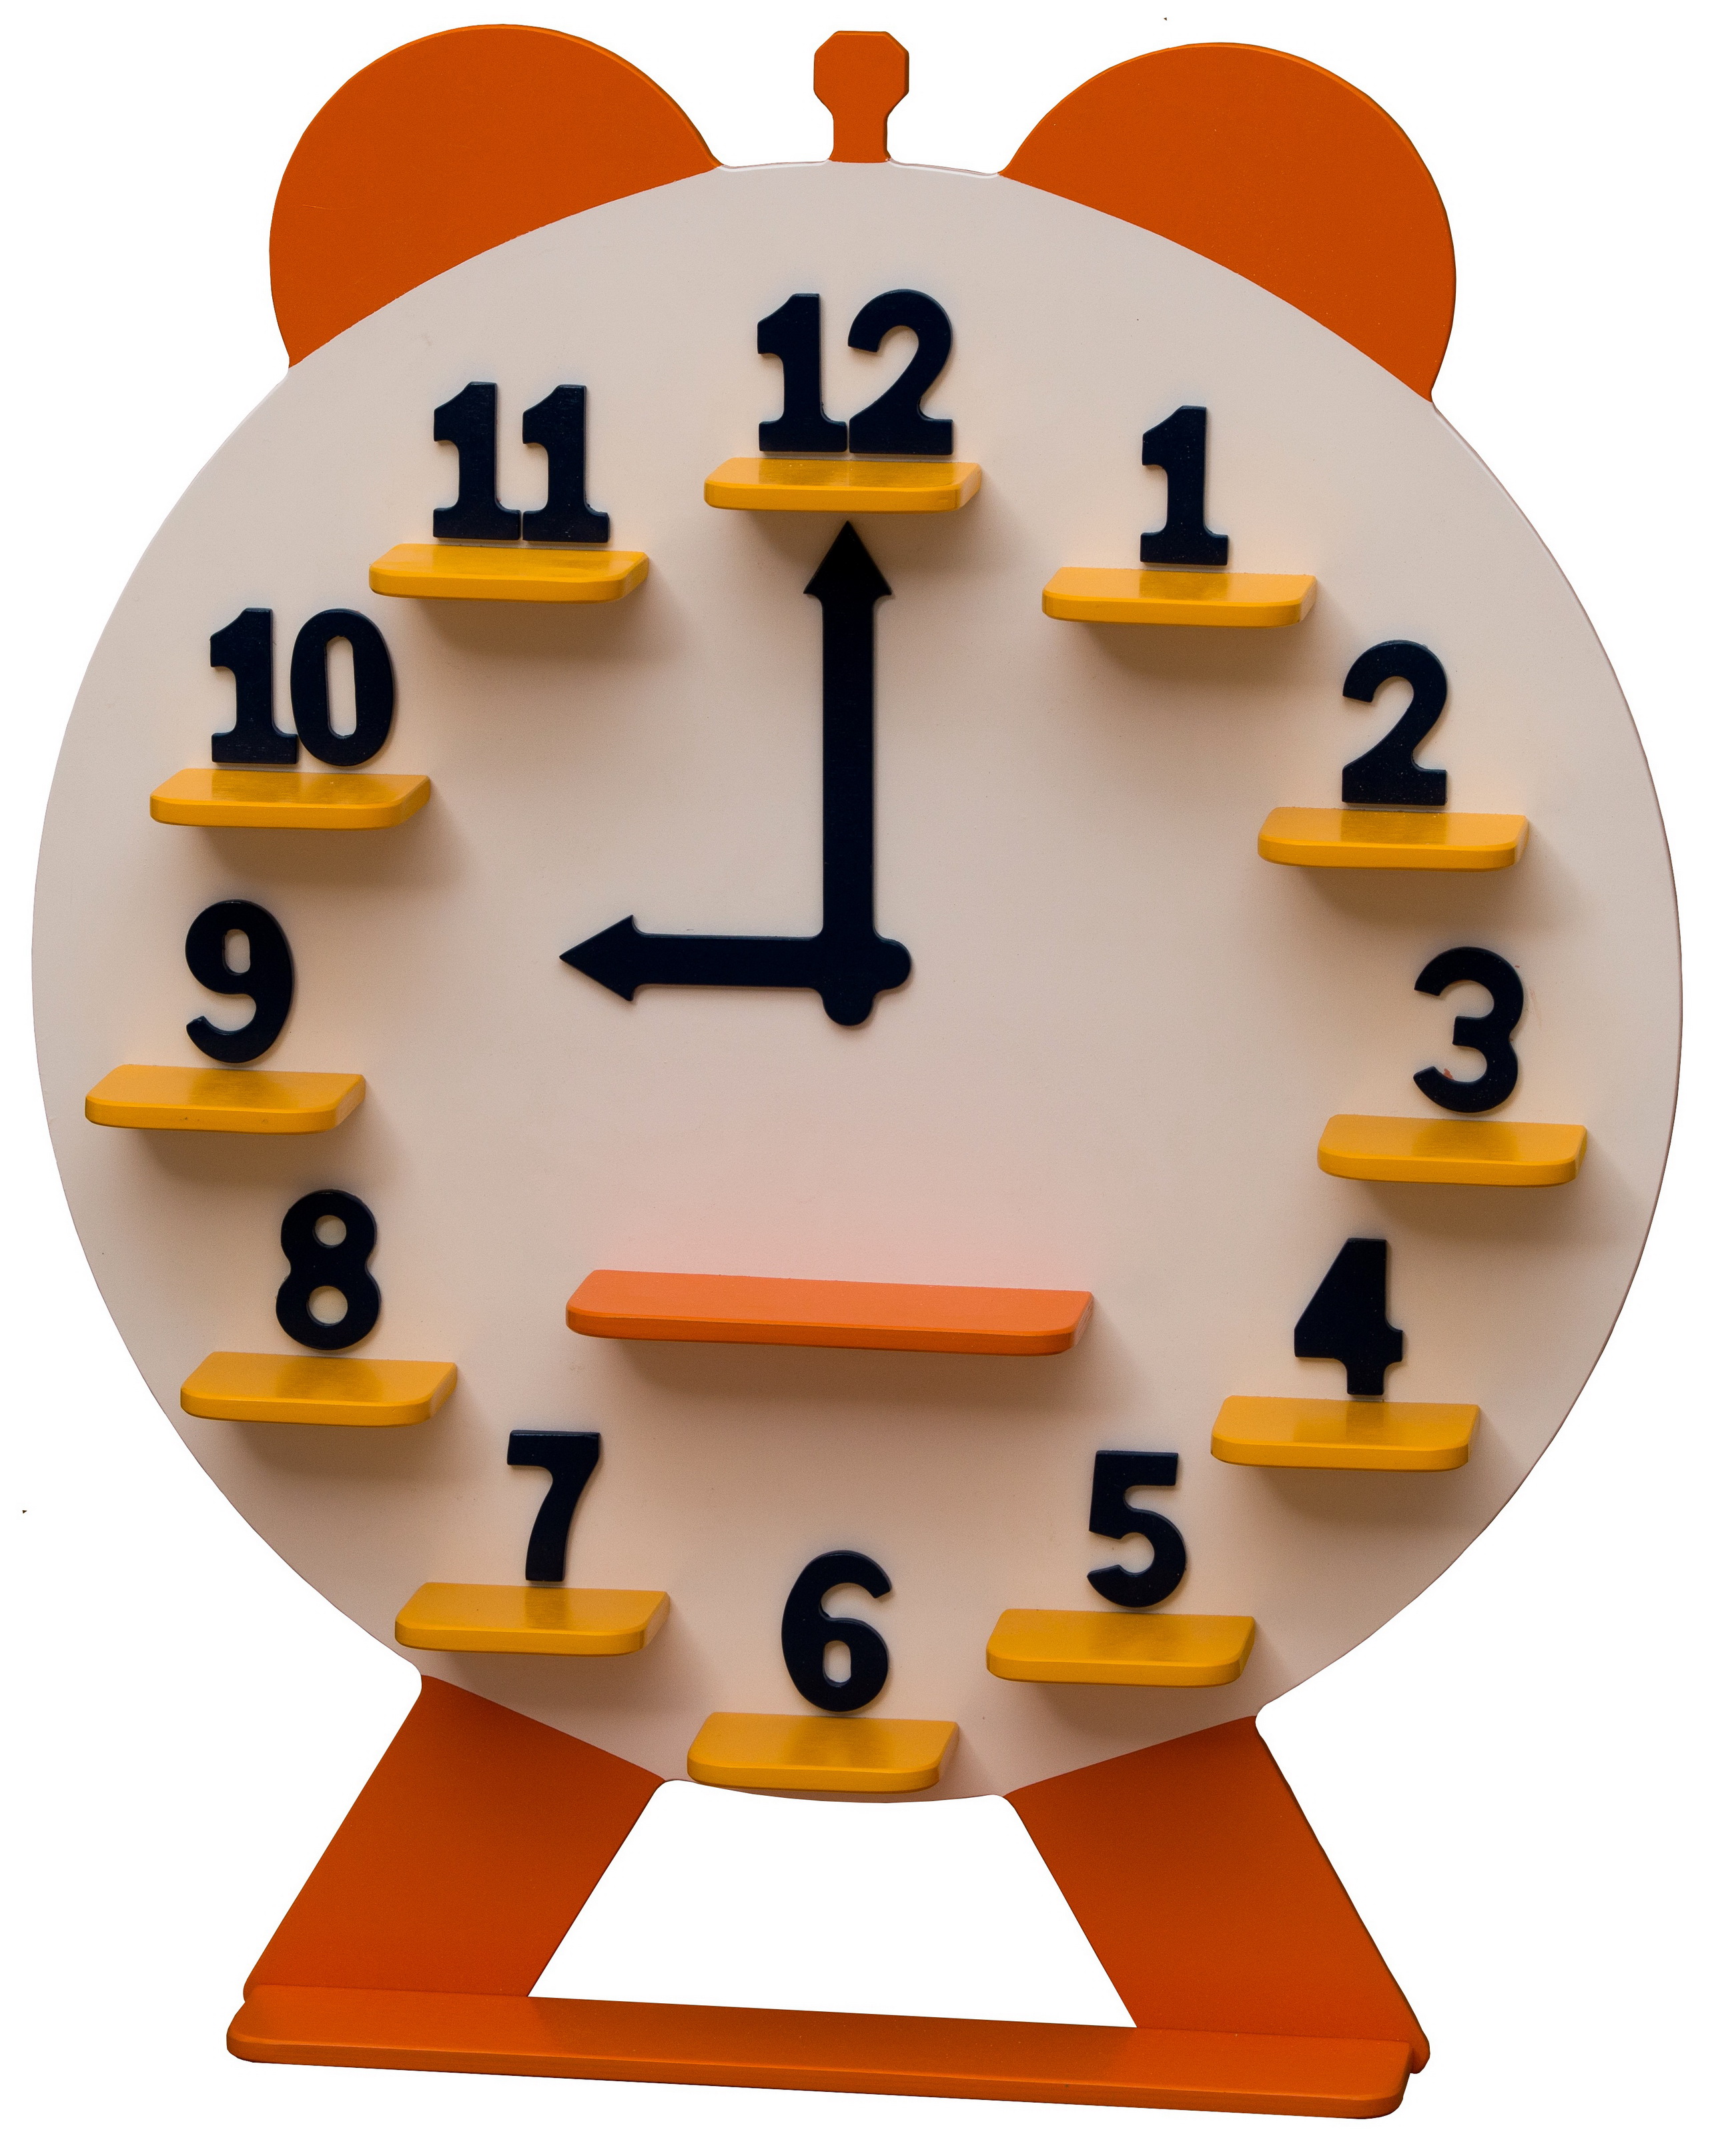 Картонные часы. Часы из картона. Часы из картона для детей. Модель часов из картона. Поделка часы для детей.